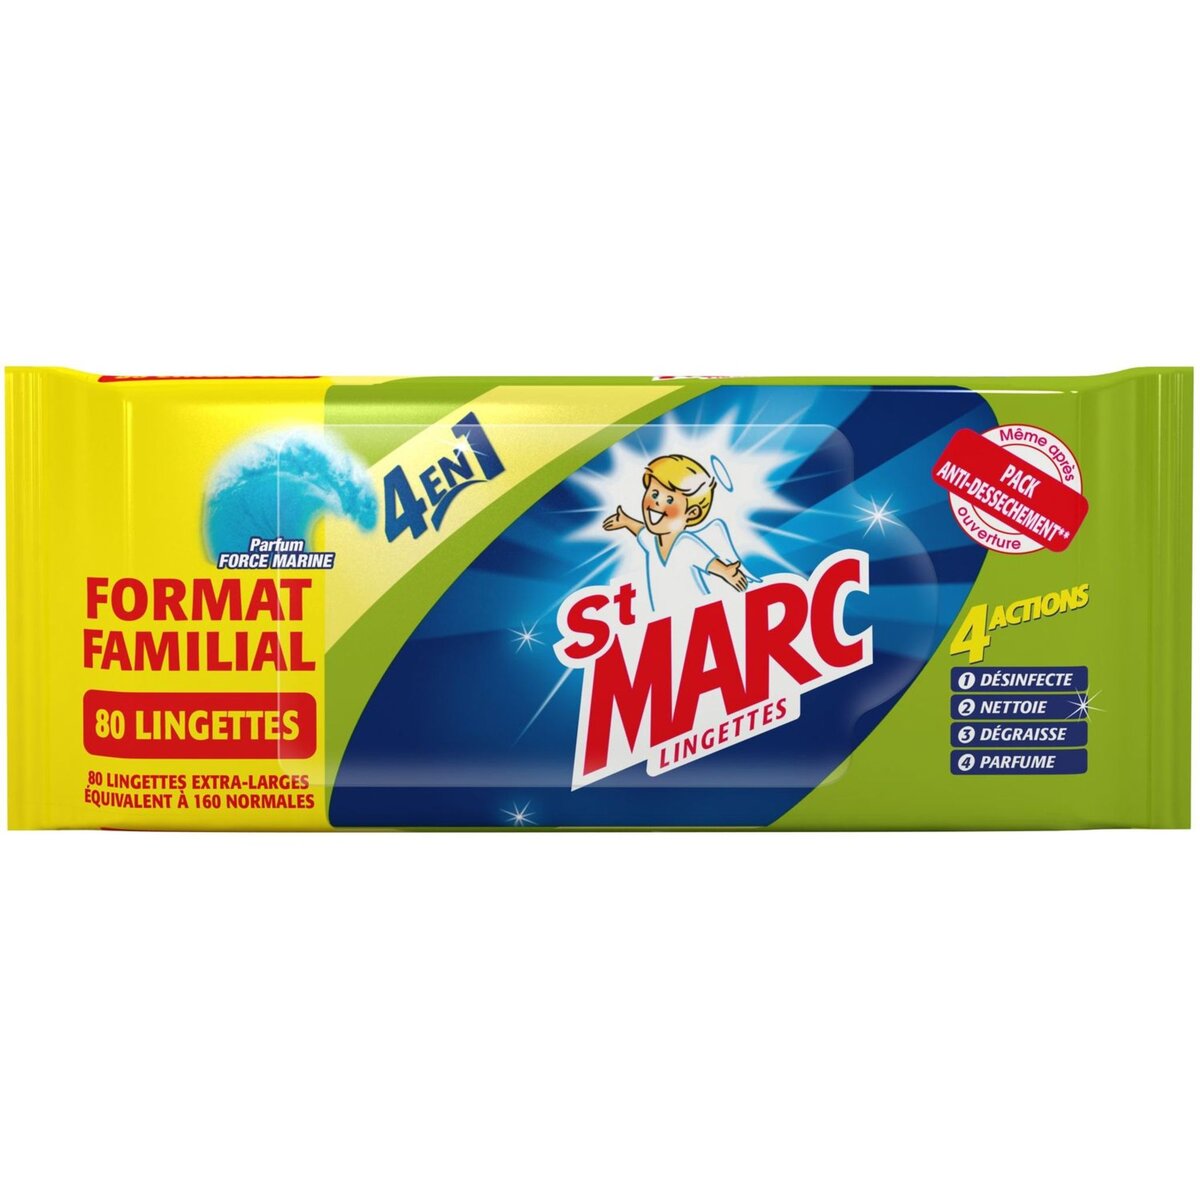 ST MARC St Marc lingette 4en1 extra large x80 format familial